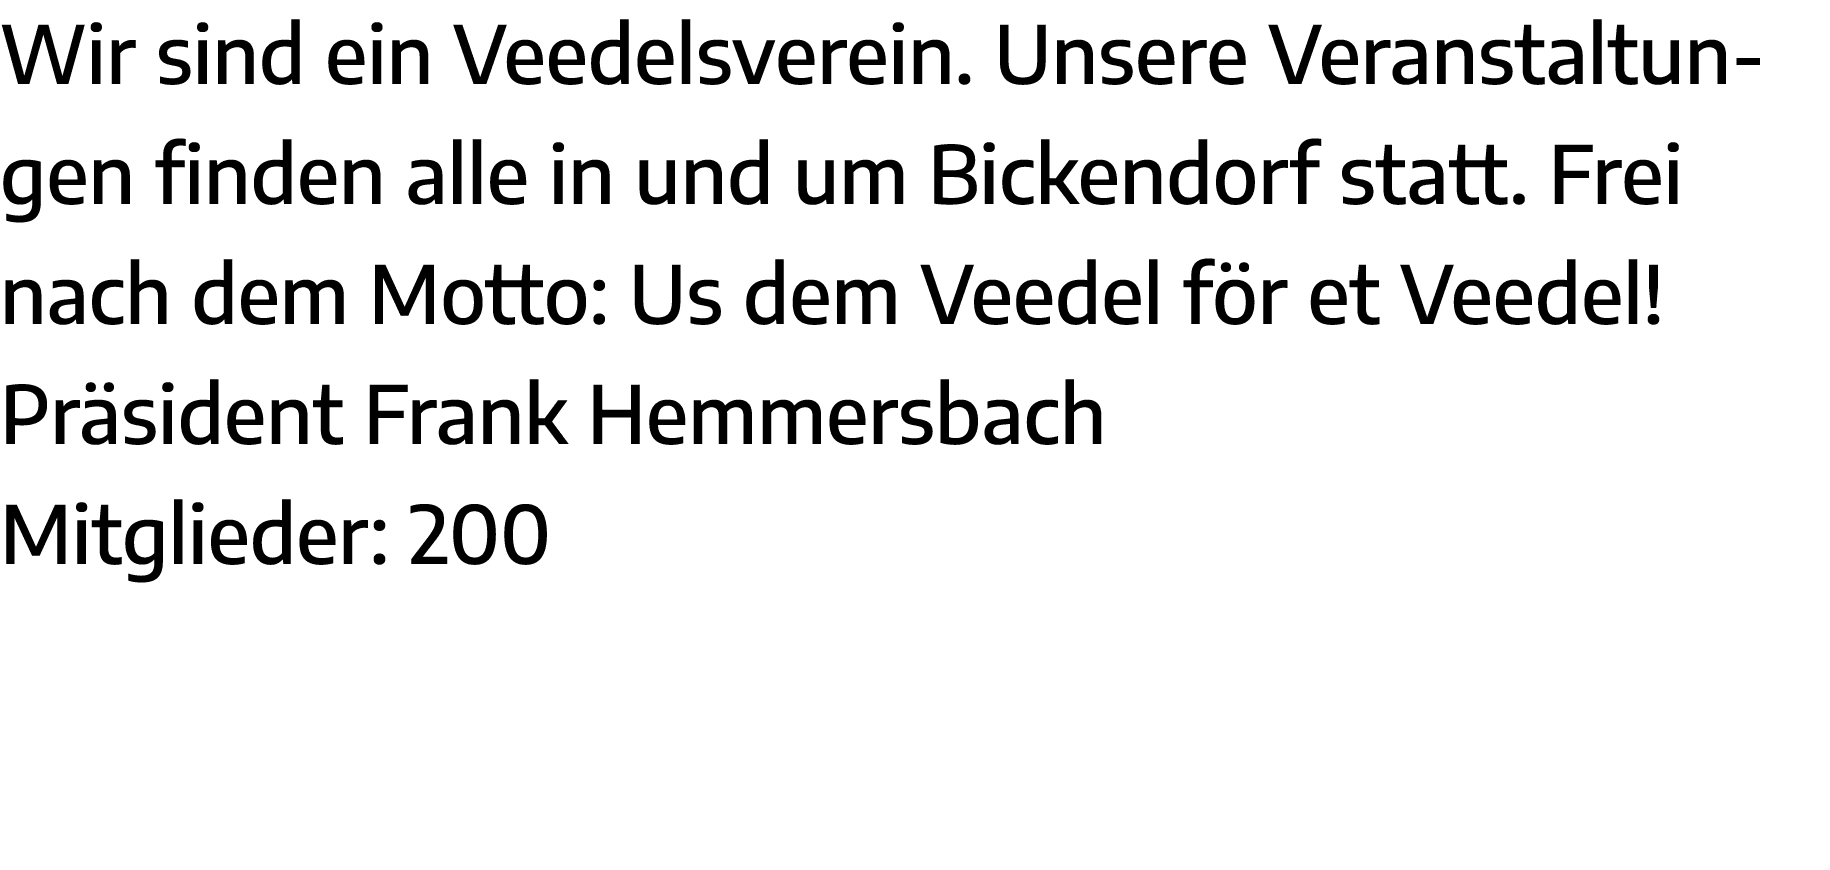 Wir sind ein Veedelsverein  Unsere Veranstaltungen finden alle in und um Bickendorf statt  Frei nach dem Motto: Us de   